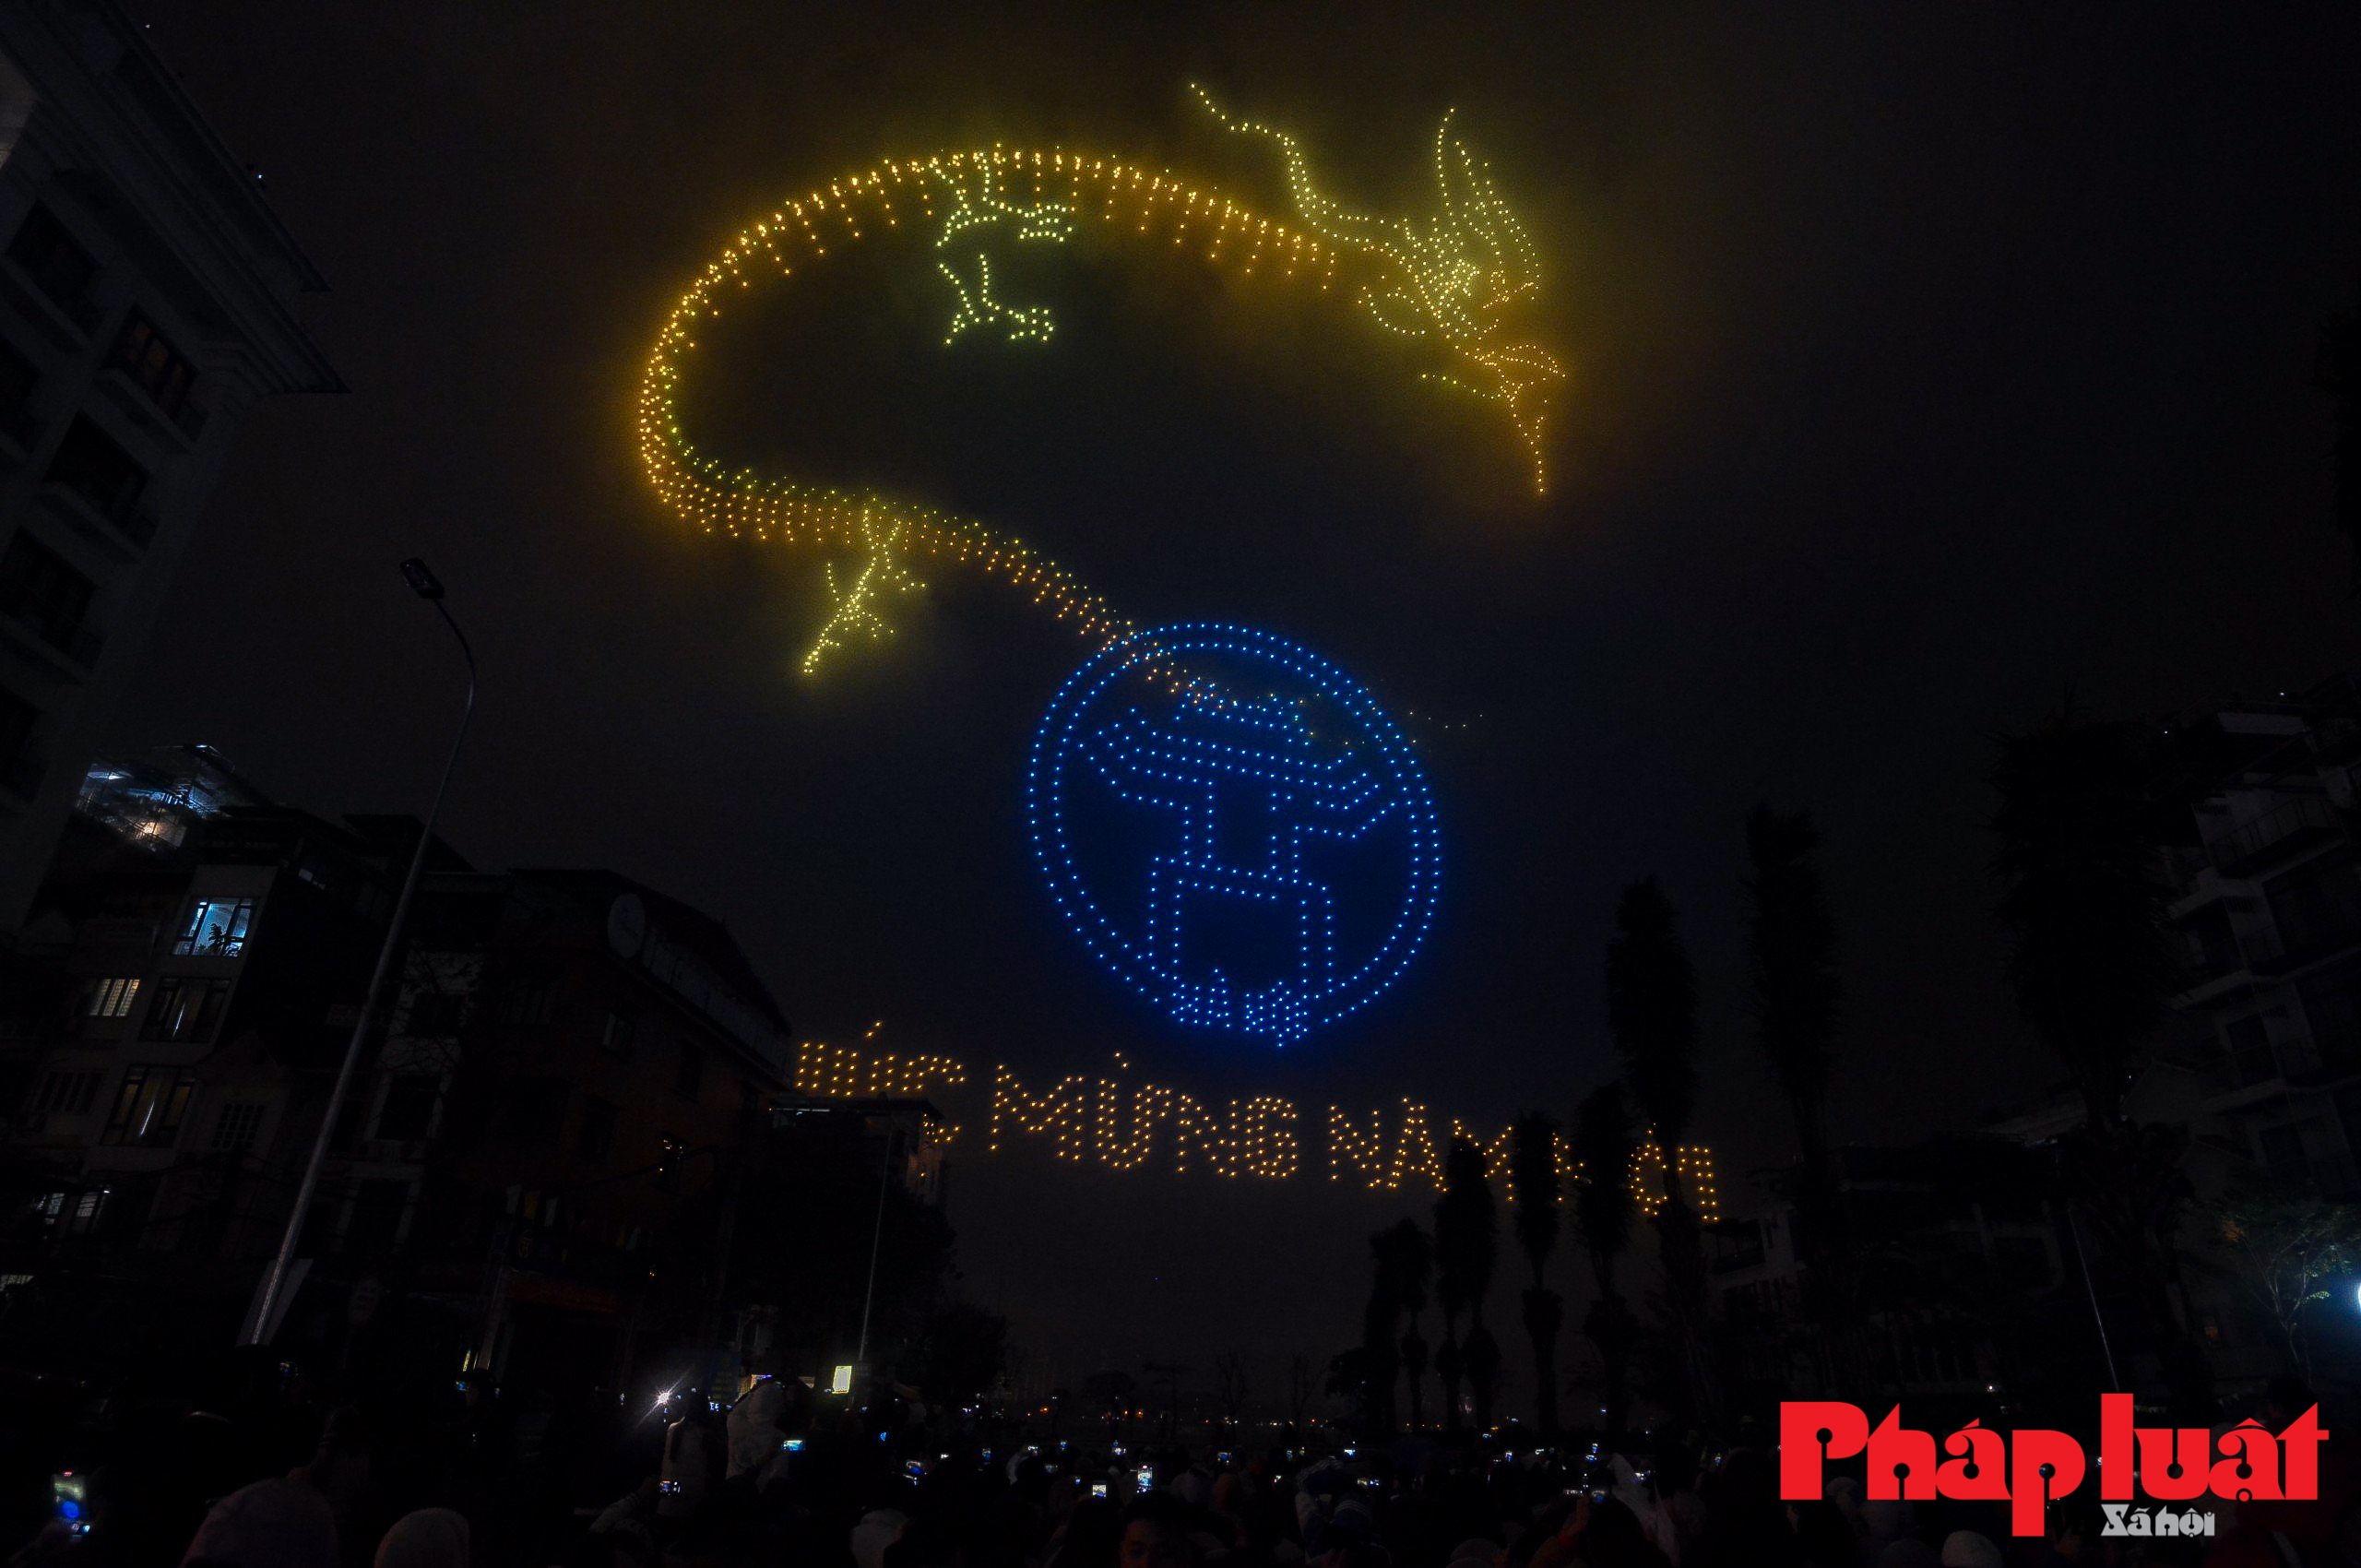 Mãn nhãn màn trình diễn drone ánh sáng mừng năm mới trên bầu trời Hà Nội